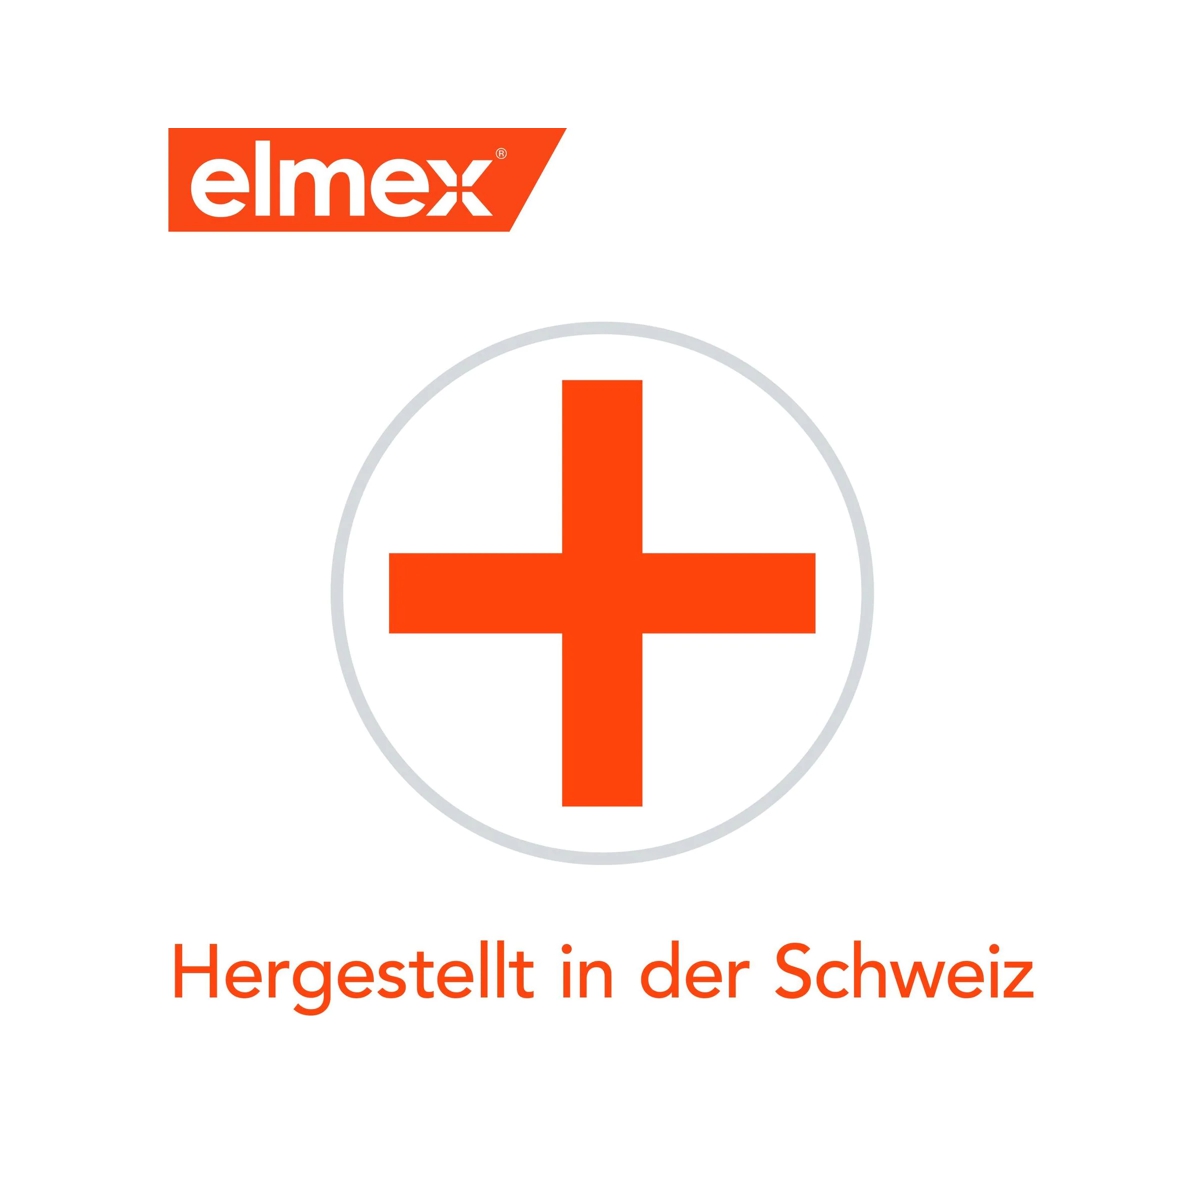 Elmex - hergestellt in der Schweiz